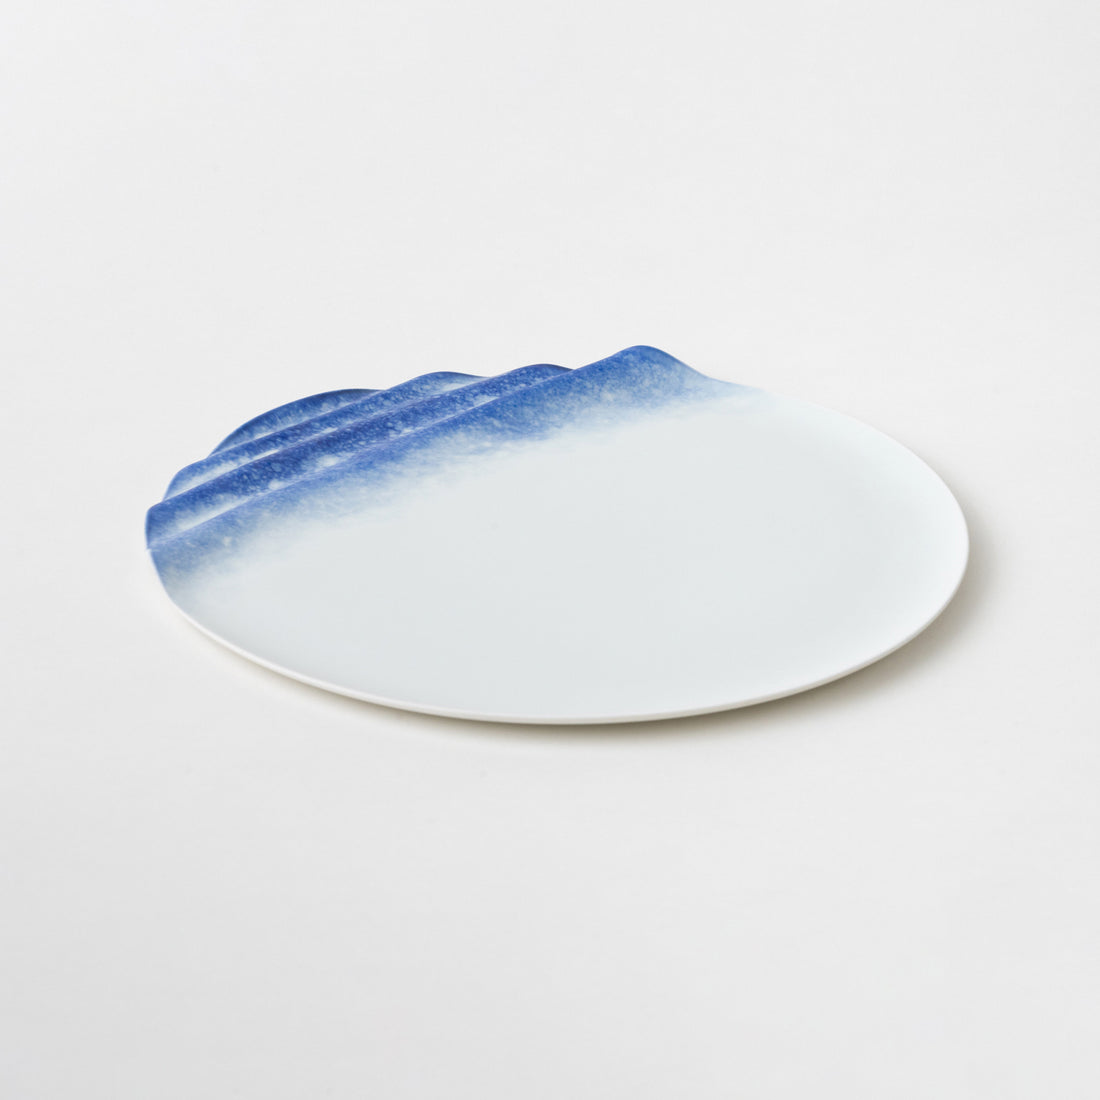 Seashore Plate / Sandblasted